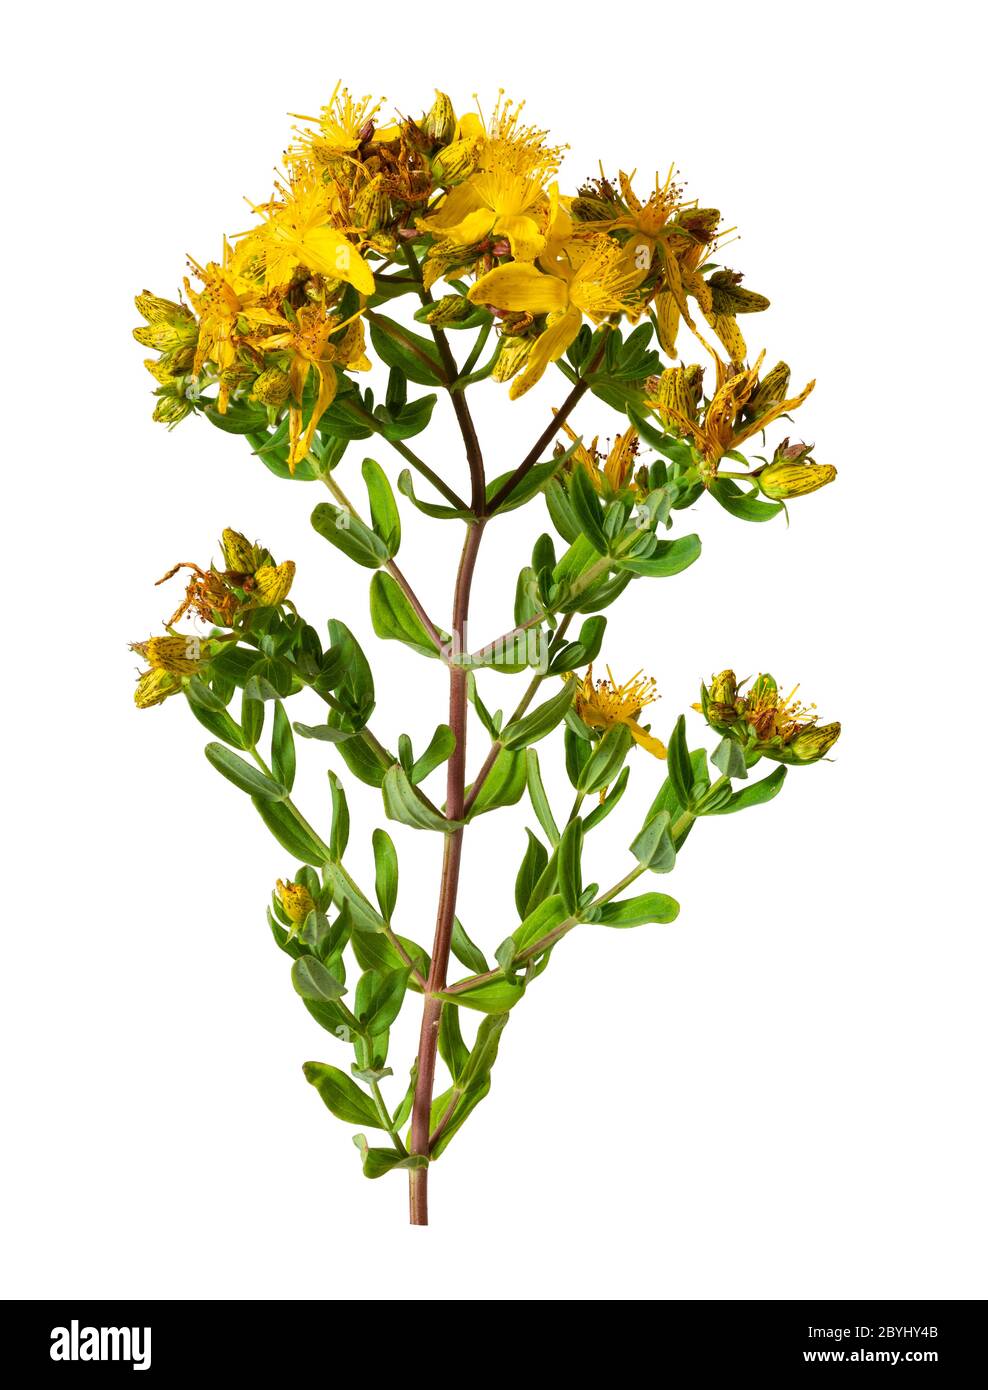 Amarillo, floraciones de principios de verano de la flor silvestre del Reino Unido, Hypericum perforatum, perforan la hierba de San Juan, un remedio herbario sobre un fondo blanco Foto de stock